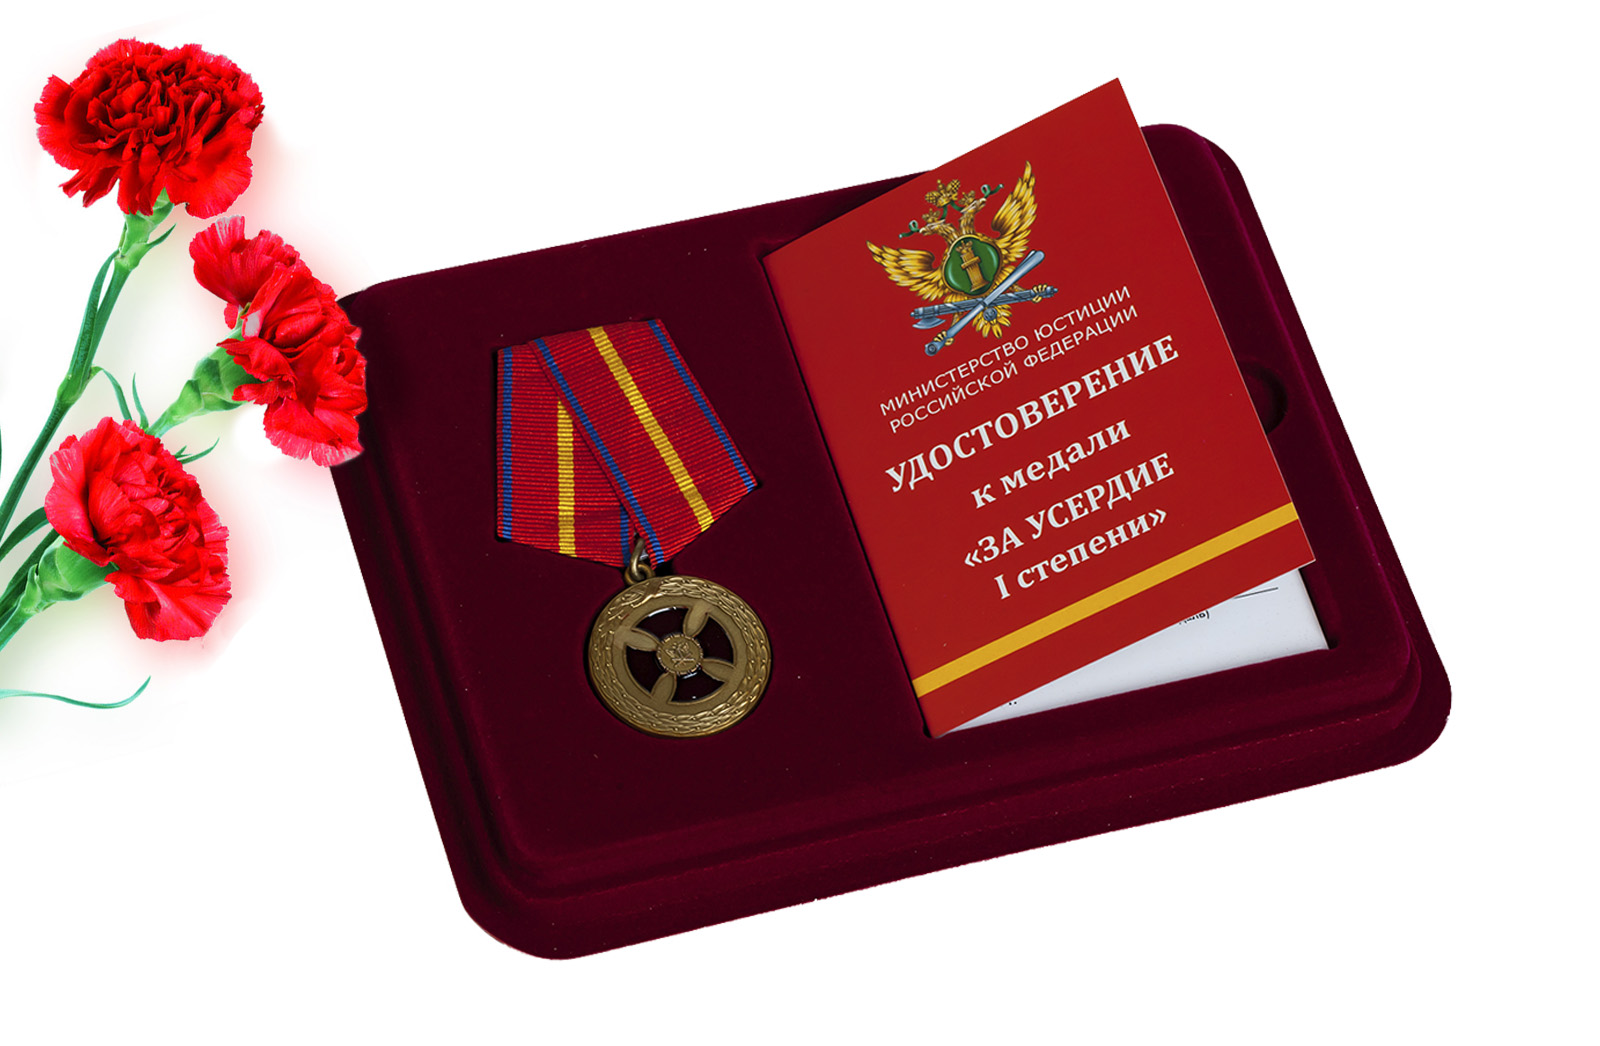 Медаль "За усердие" (Минюст) 1-й степени